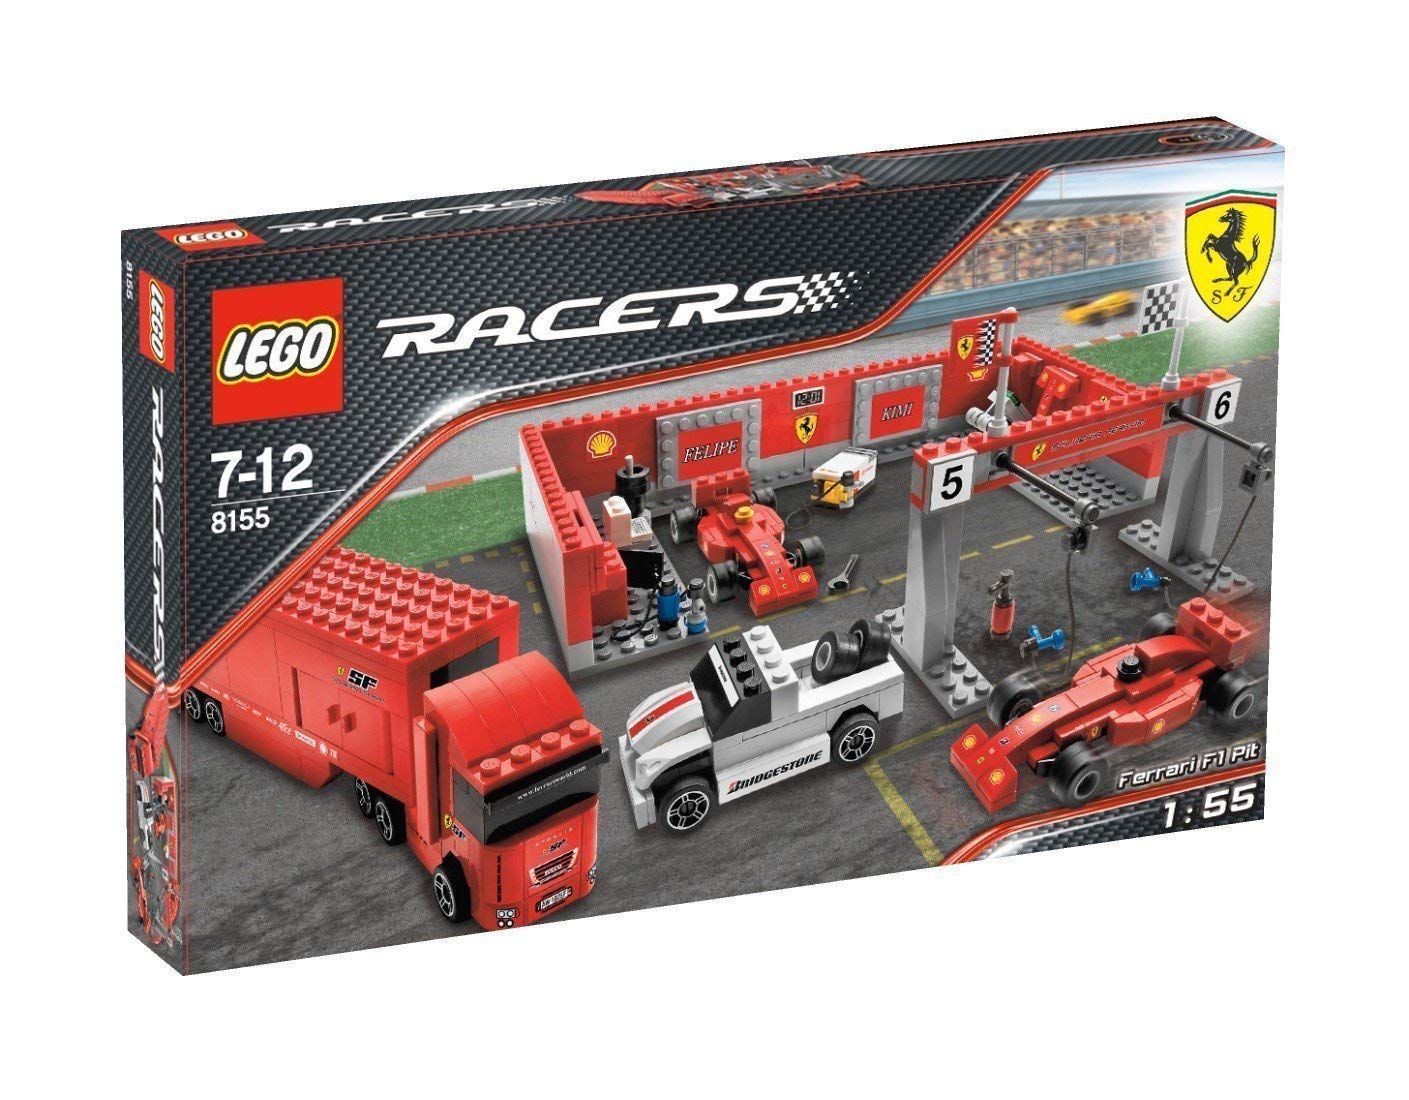 Lego Racers Ferrari F Pit